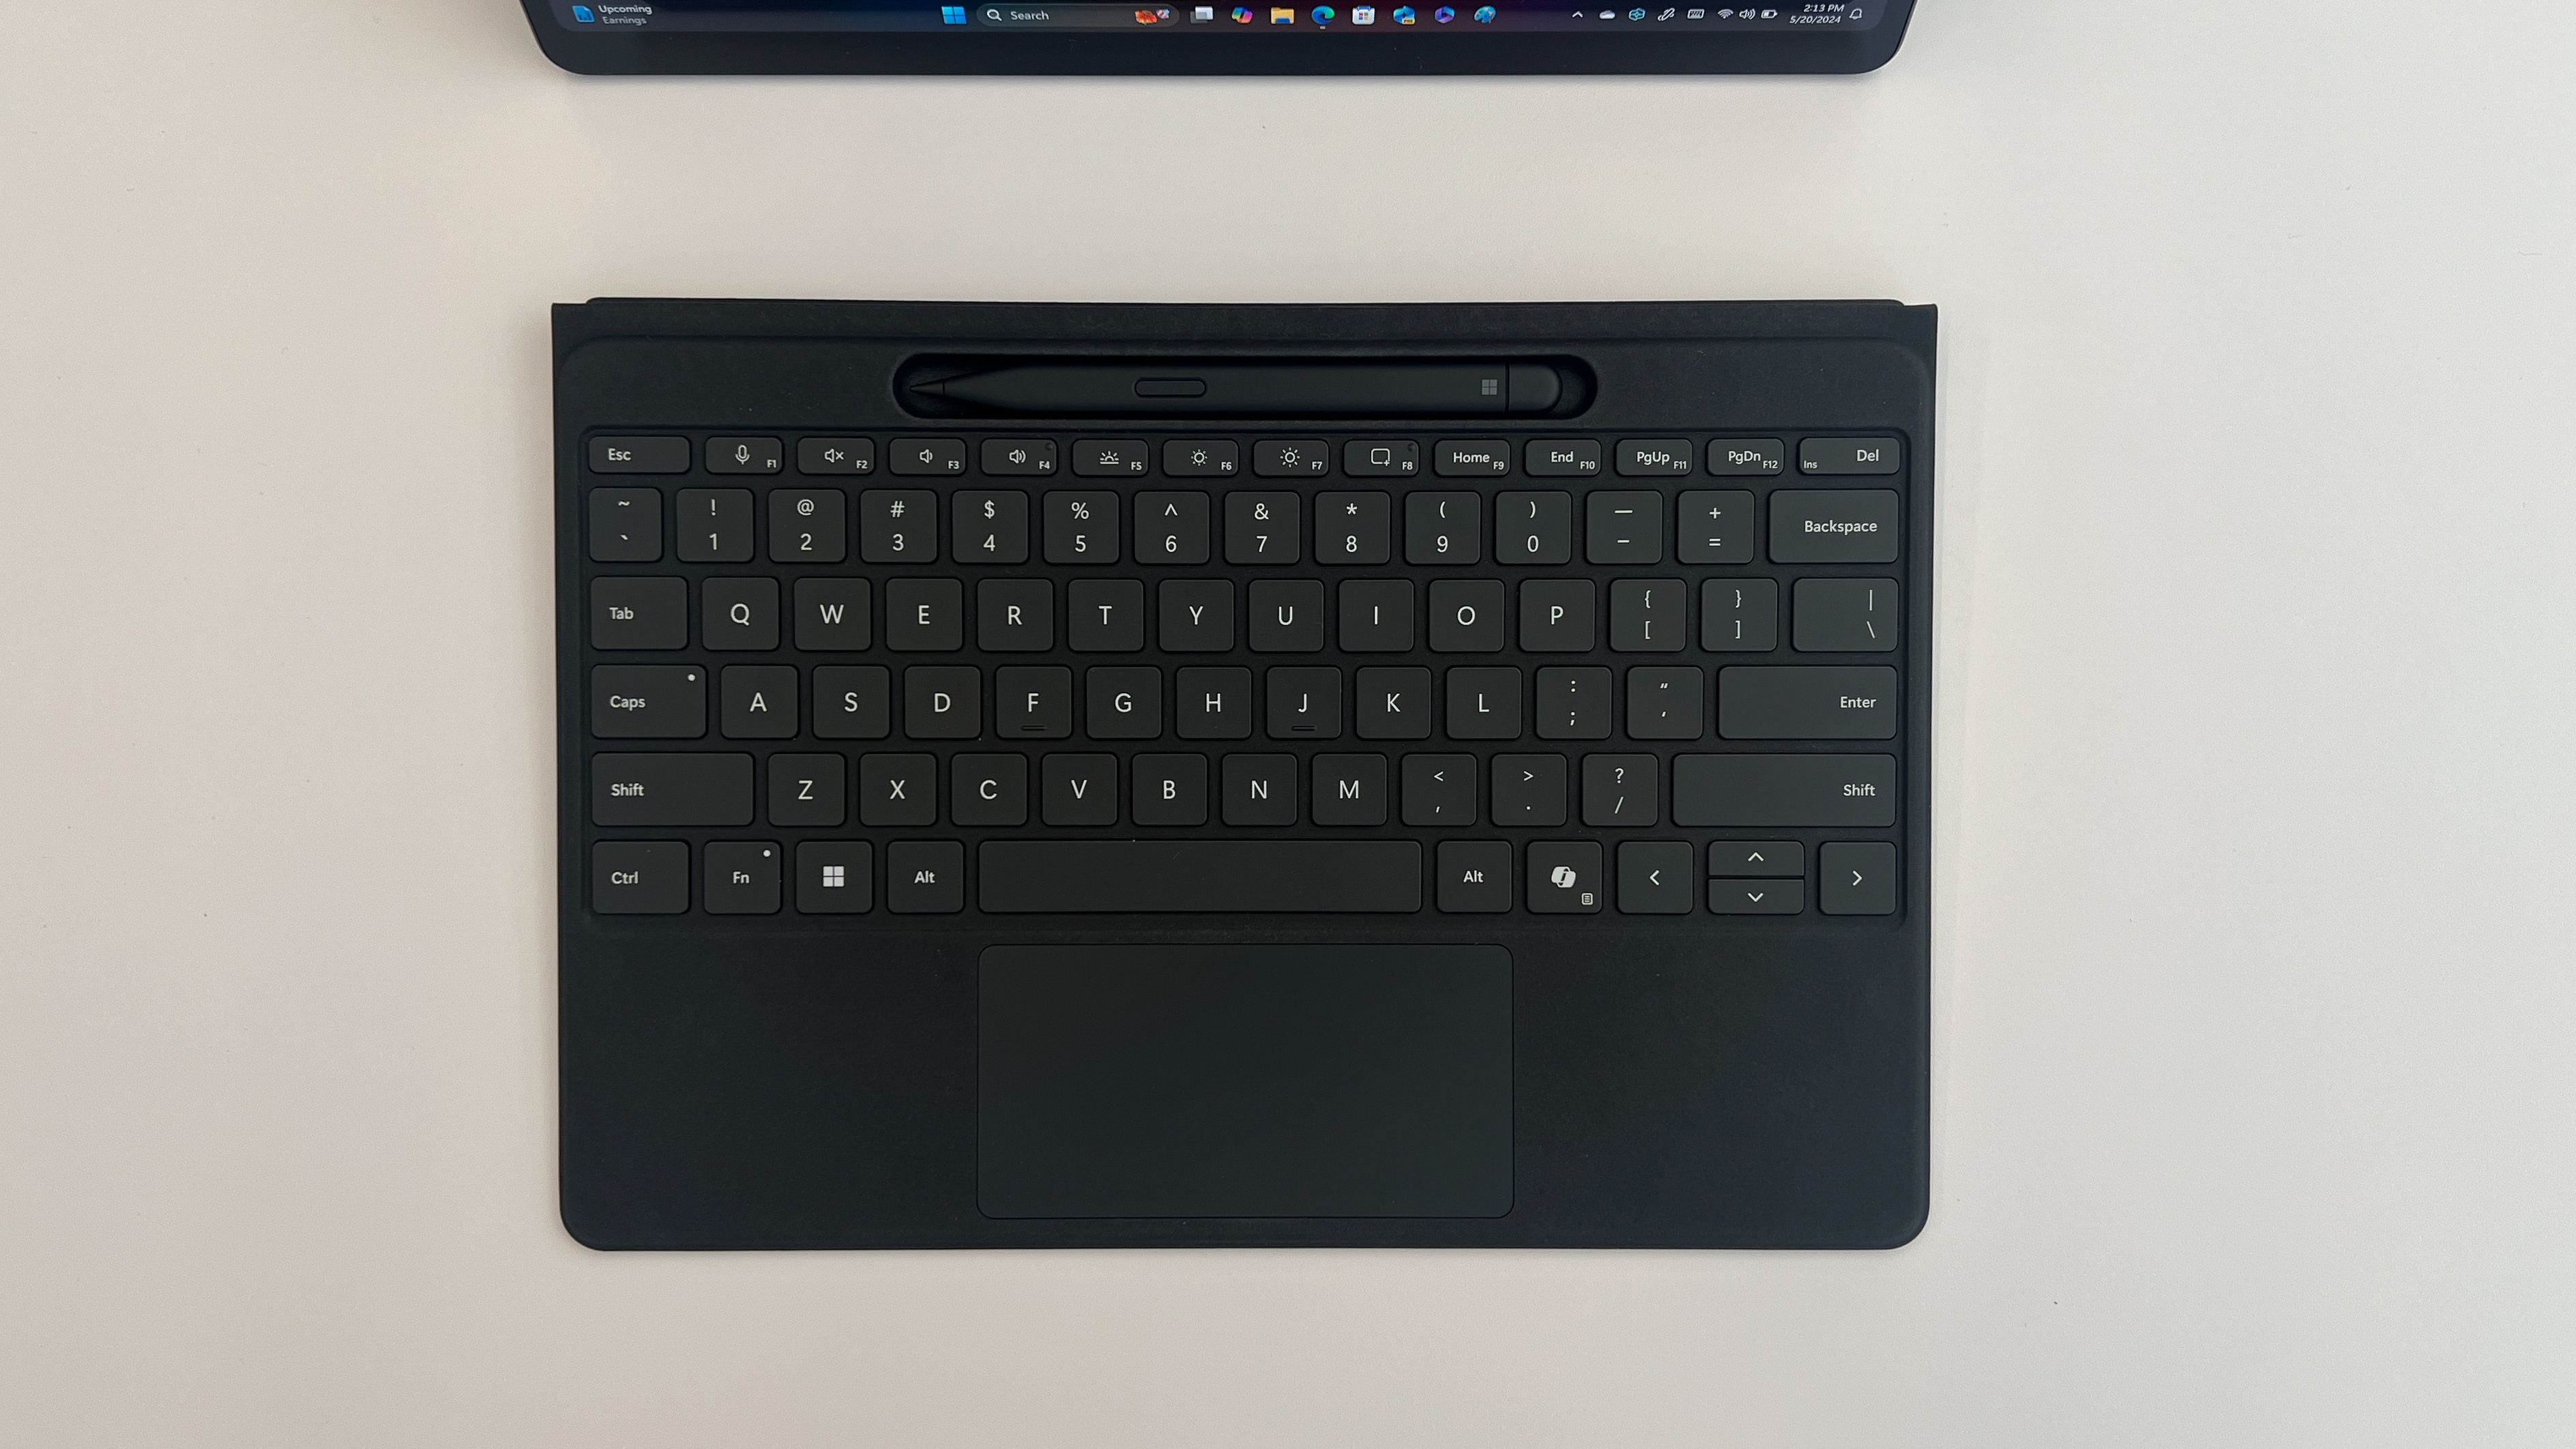 The Microsoft Surface Pro Smart Pen docked in the Flex Keyboard